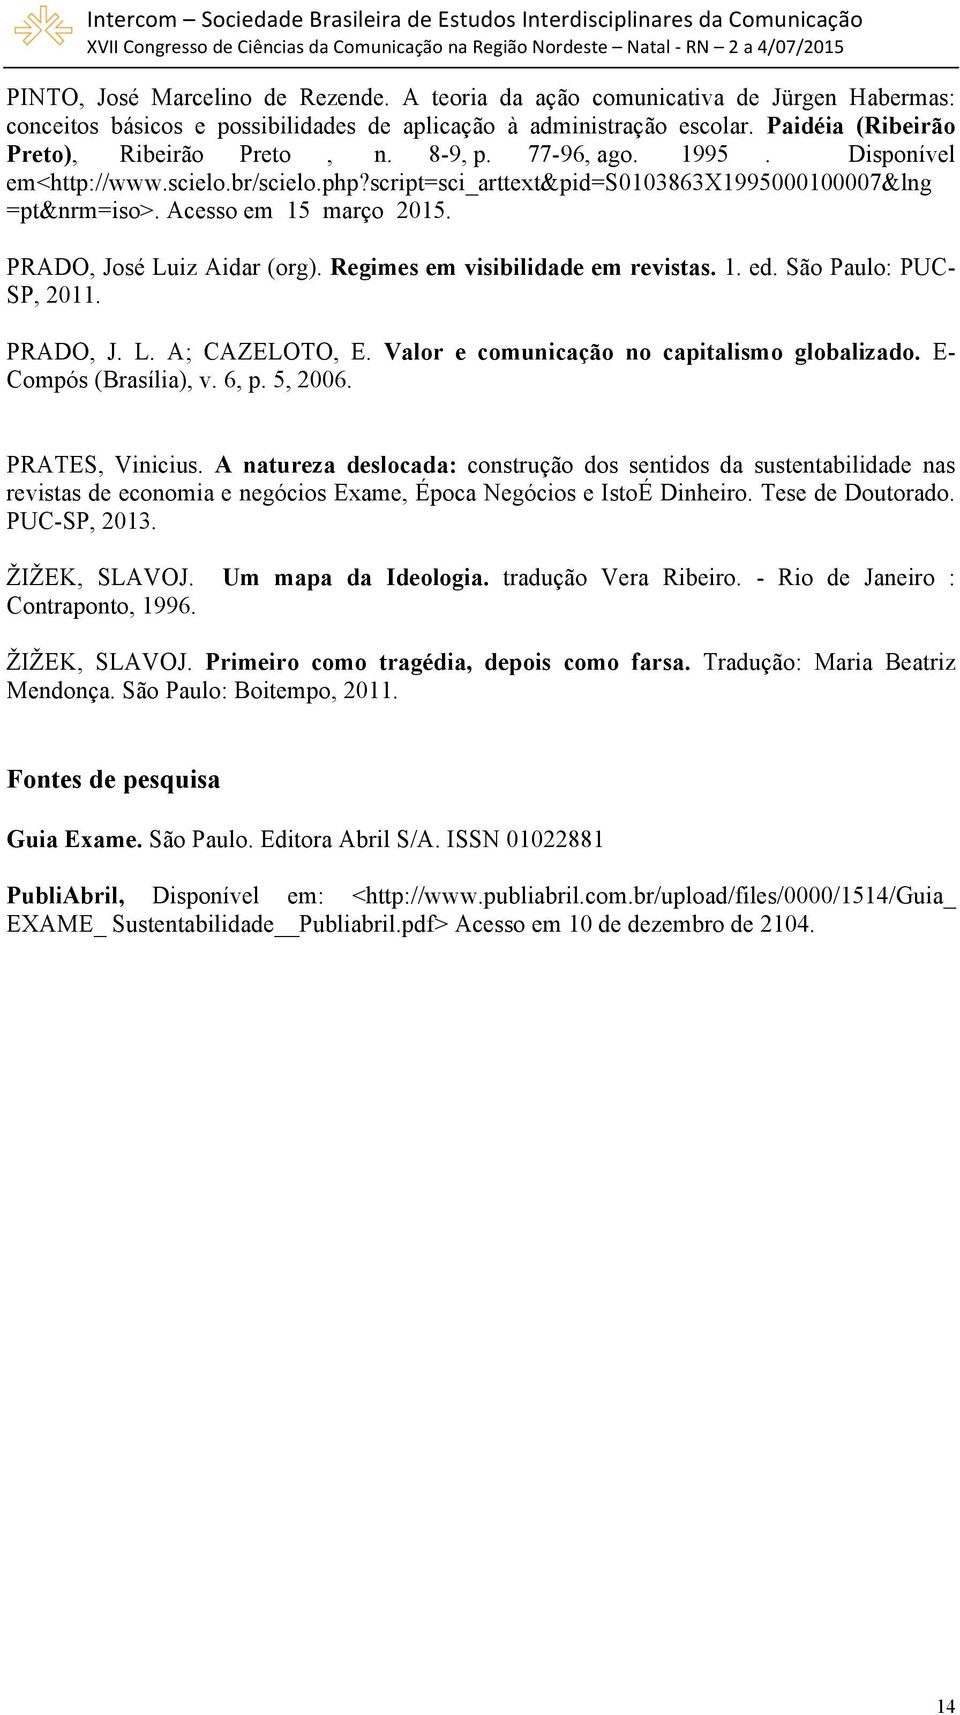 Acesso em 15 março 2015. PRADO, José Luiz Aidar (org). Regimes em visibilidade em revistas. 1. ed. São Paulo: PUC- SP, 2011. PRADO, J. L. A; CAZELOTO, E.